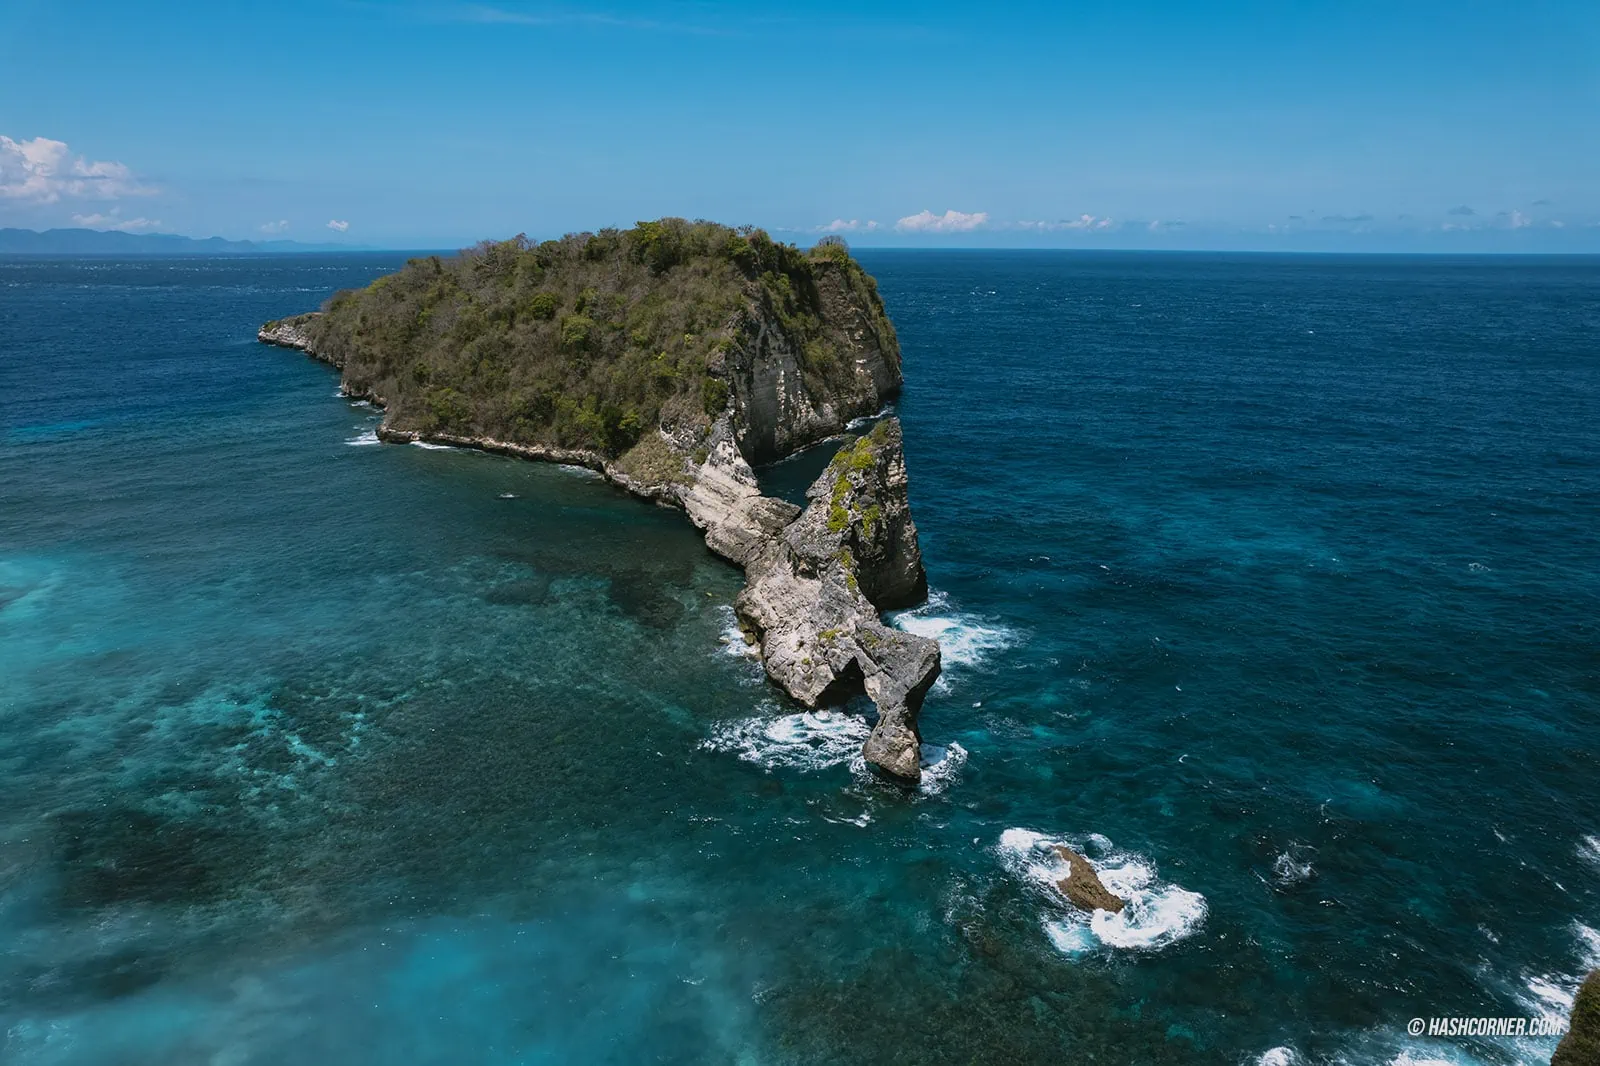 รีวิว เกาะนูซา เปอนีดา (Nusa Penida) x บาหลี อินโดนีเซีย